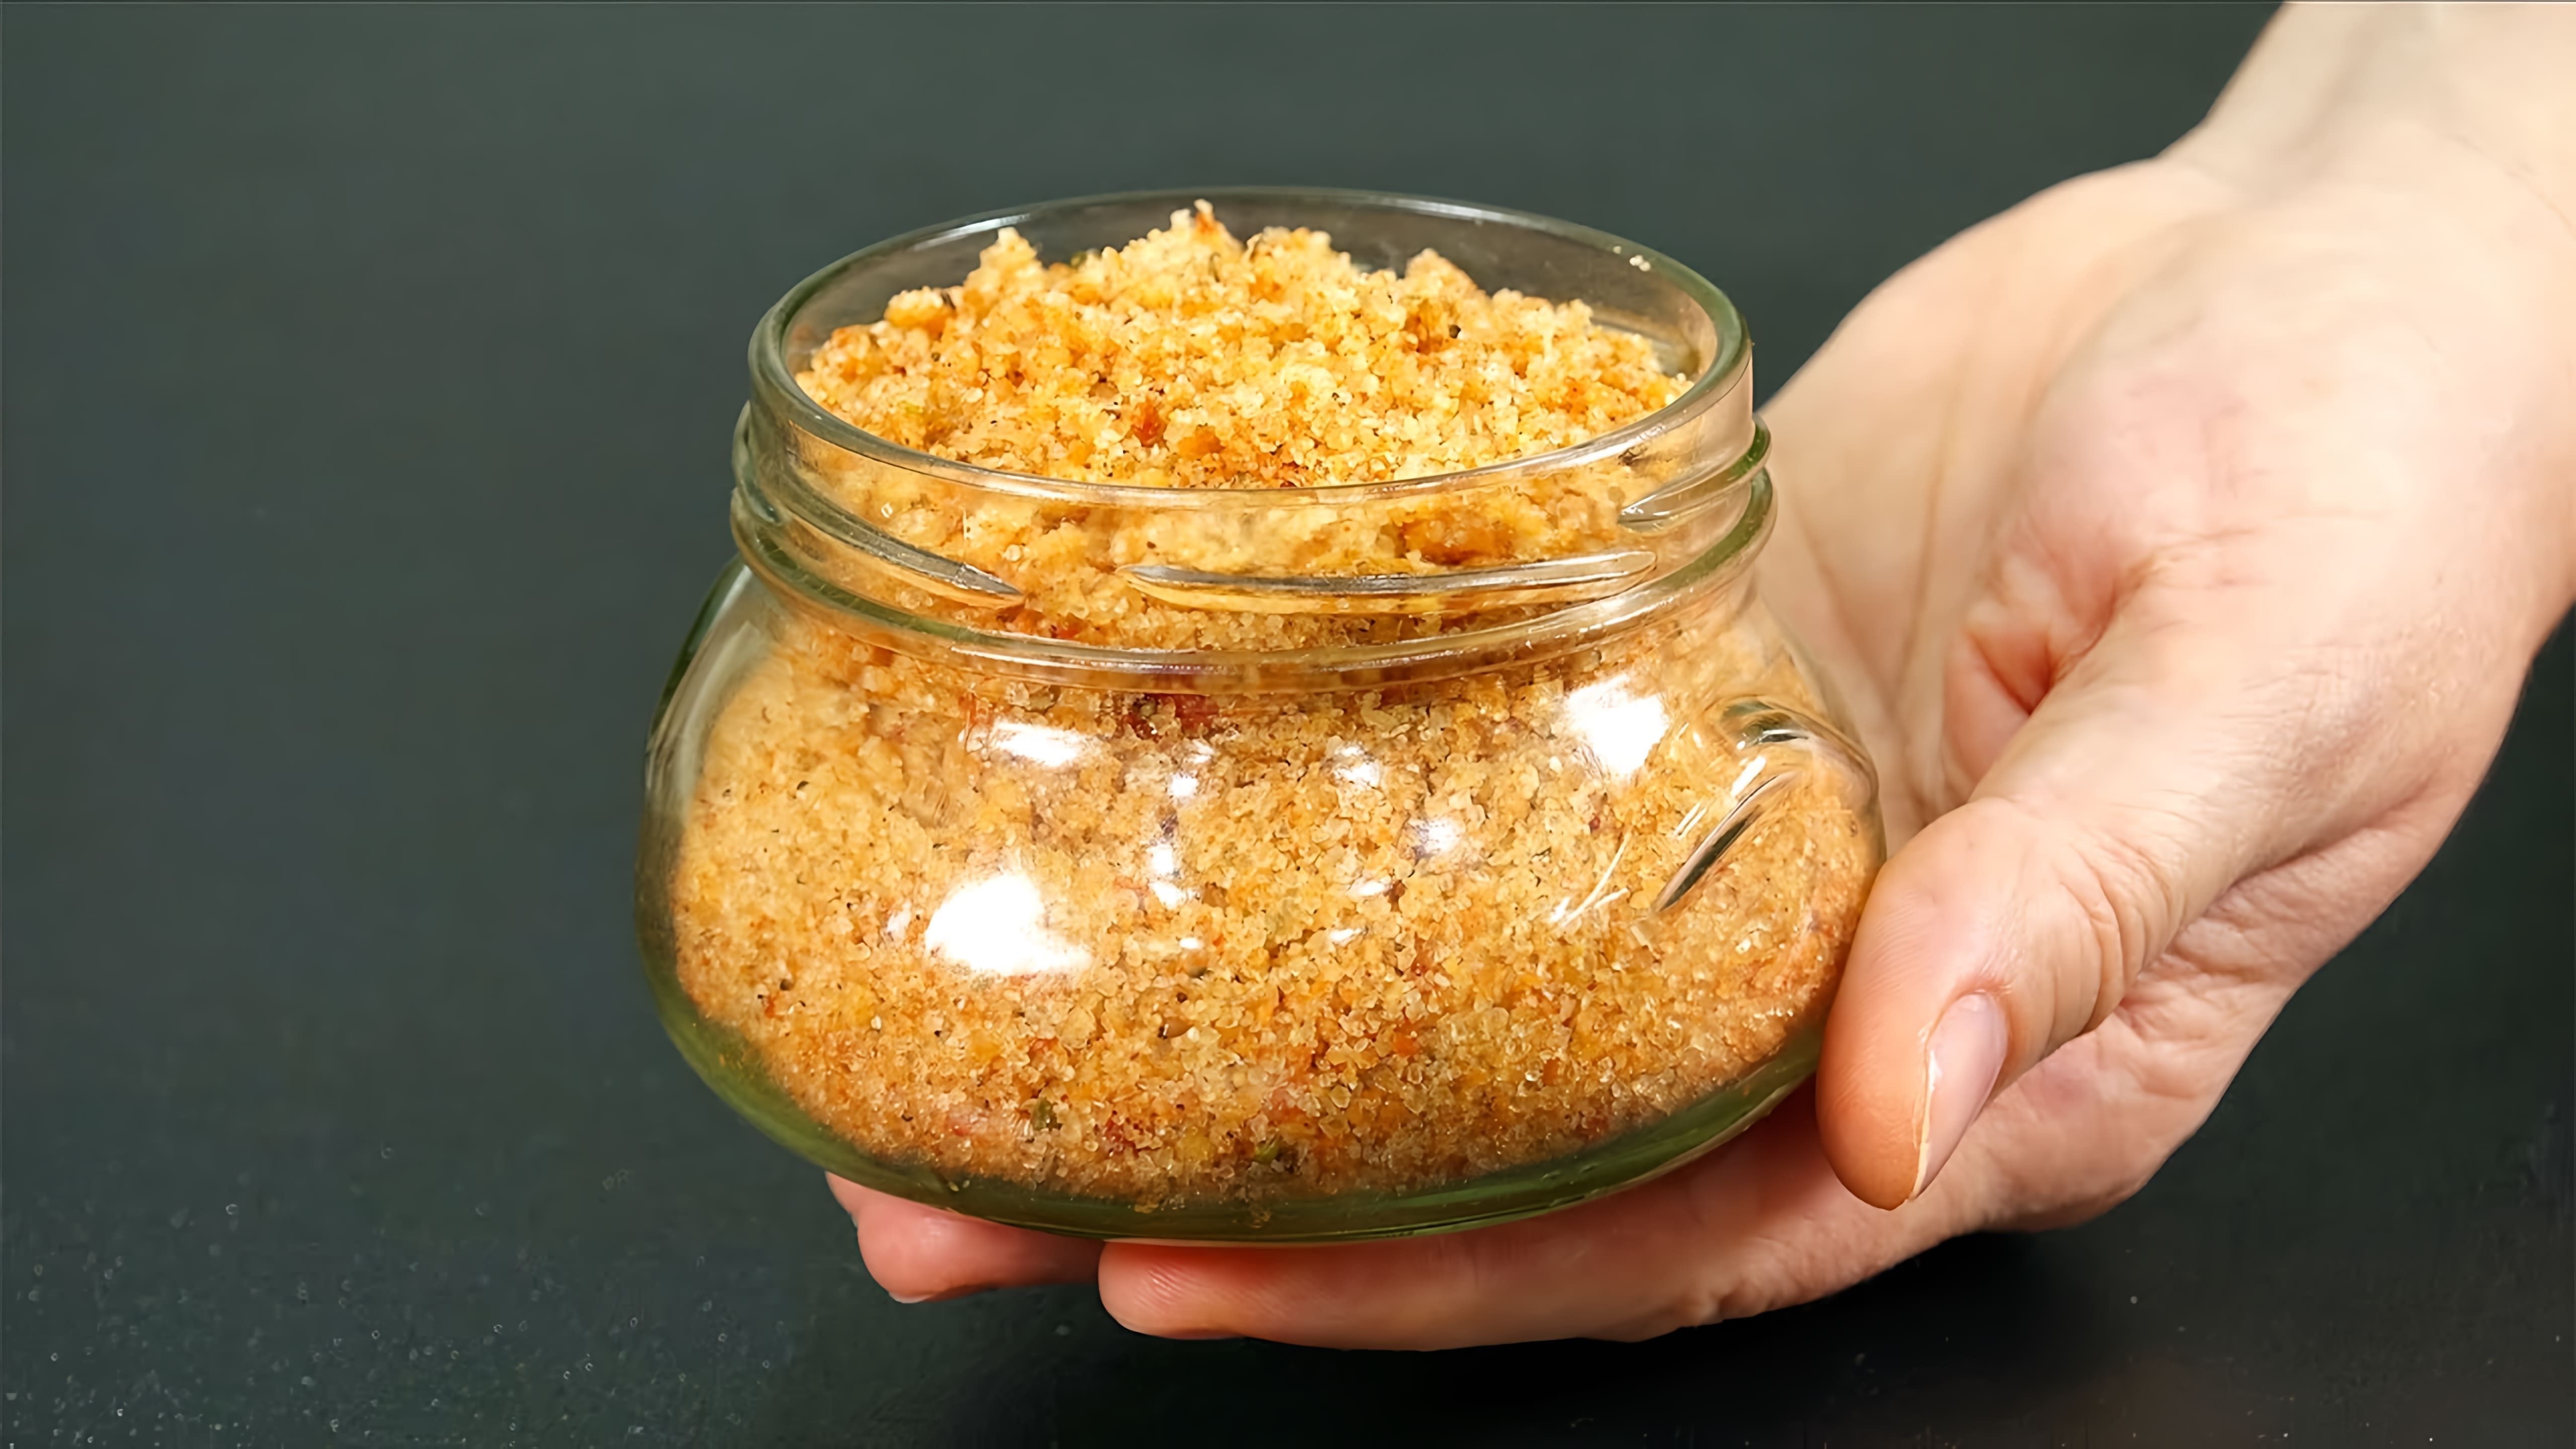 В этом видео демонстрируется процесс приготовления адыгейской соли, которая является альтернативой обычной соли и специй